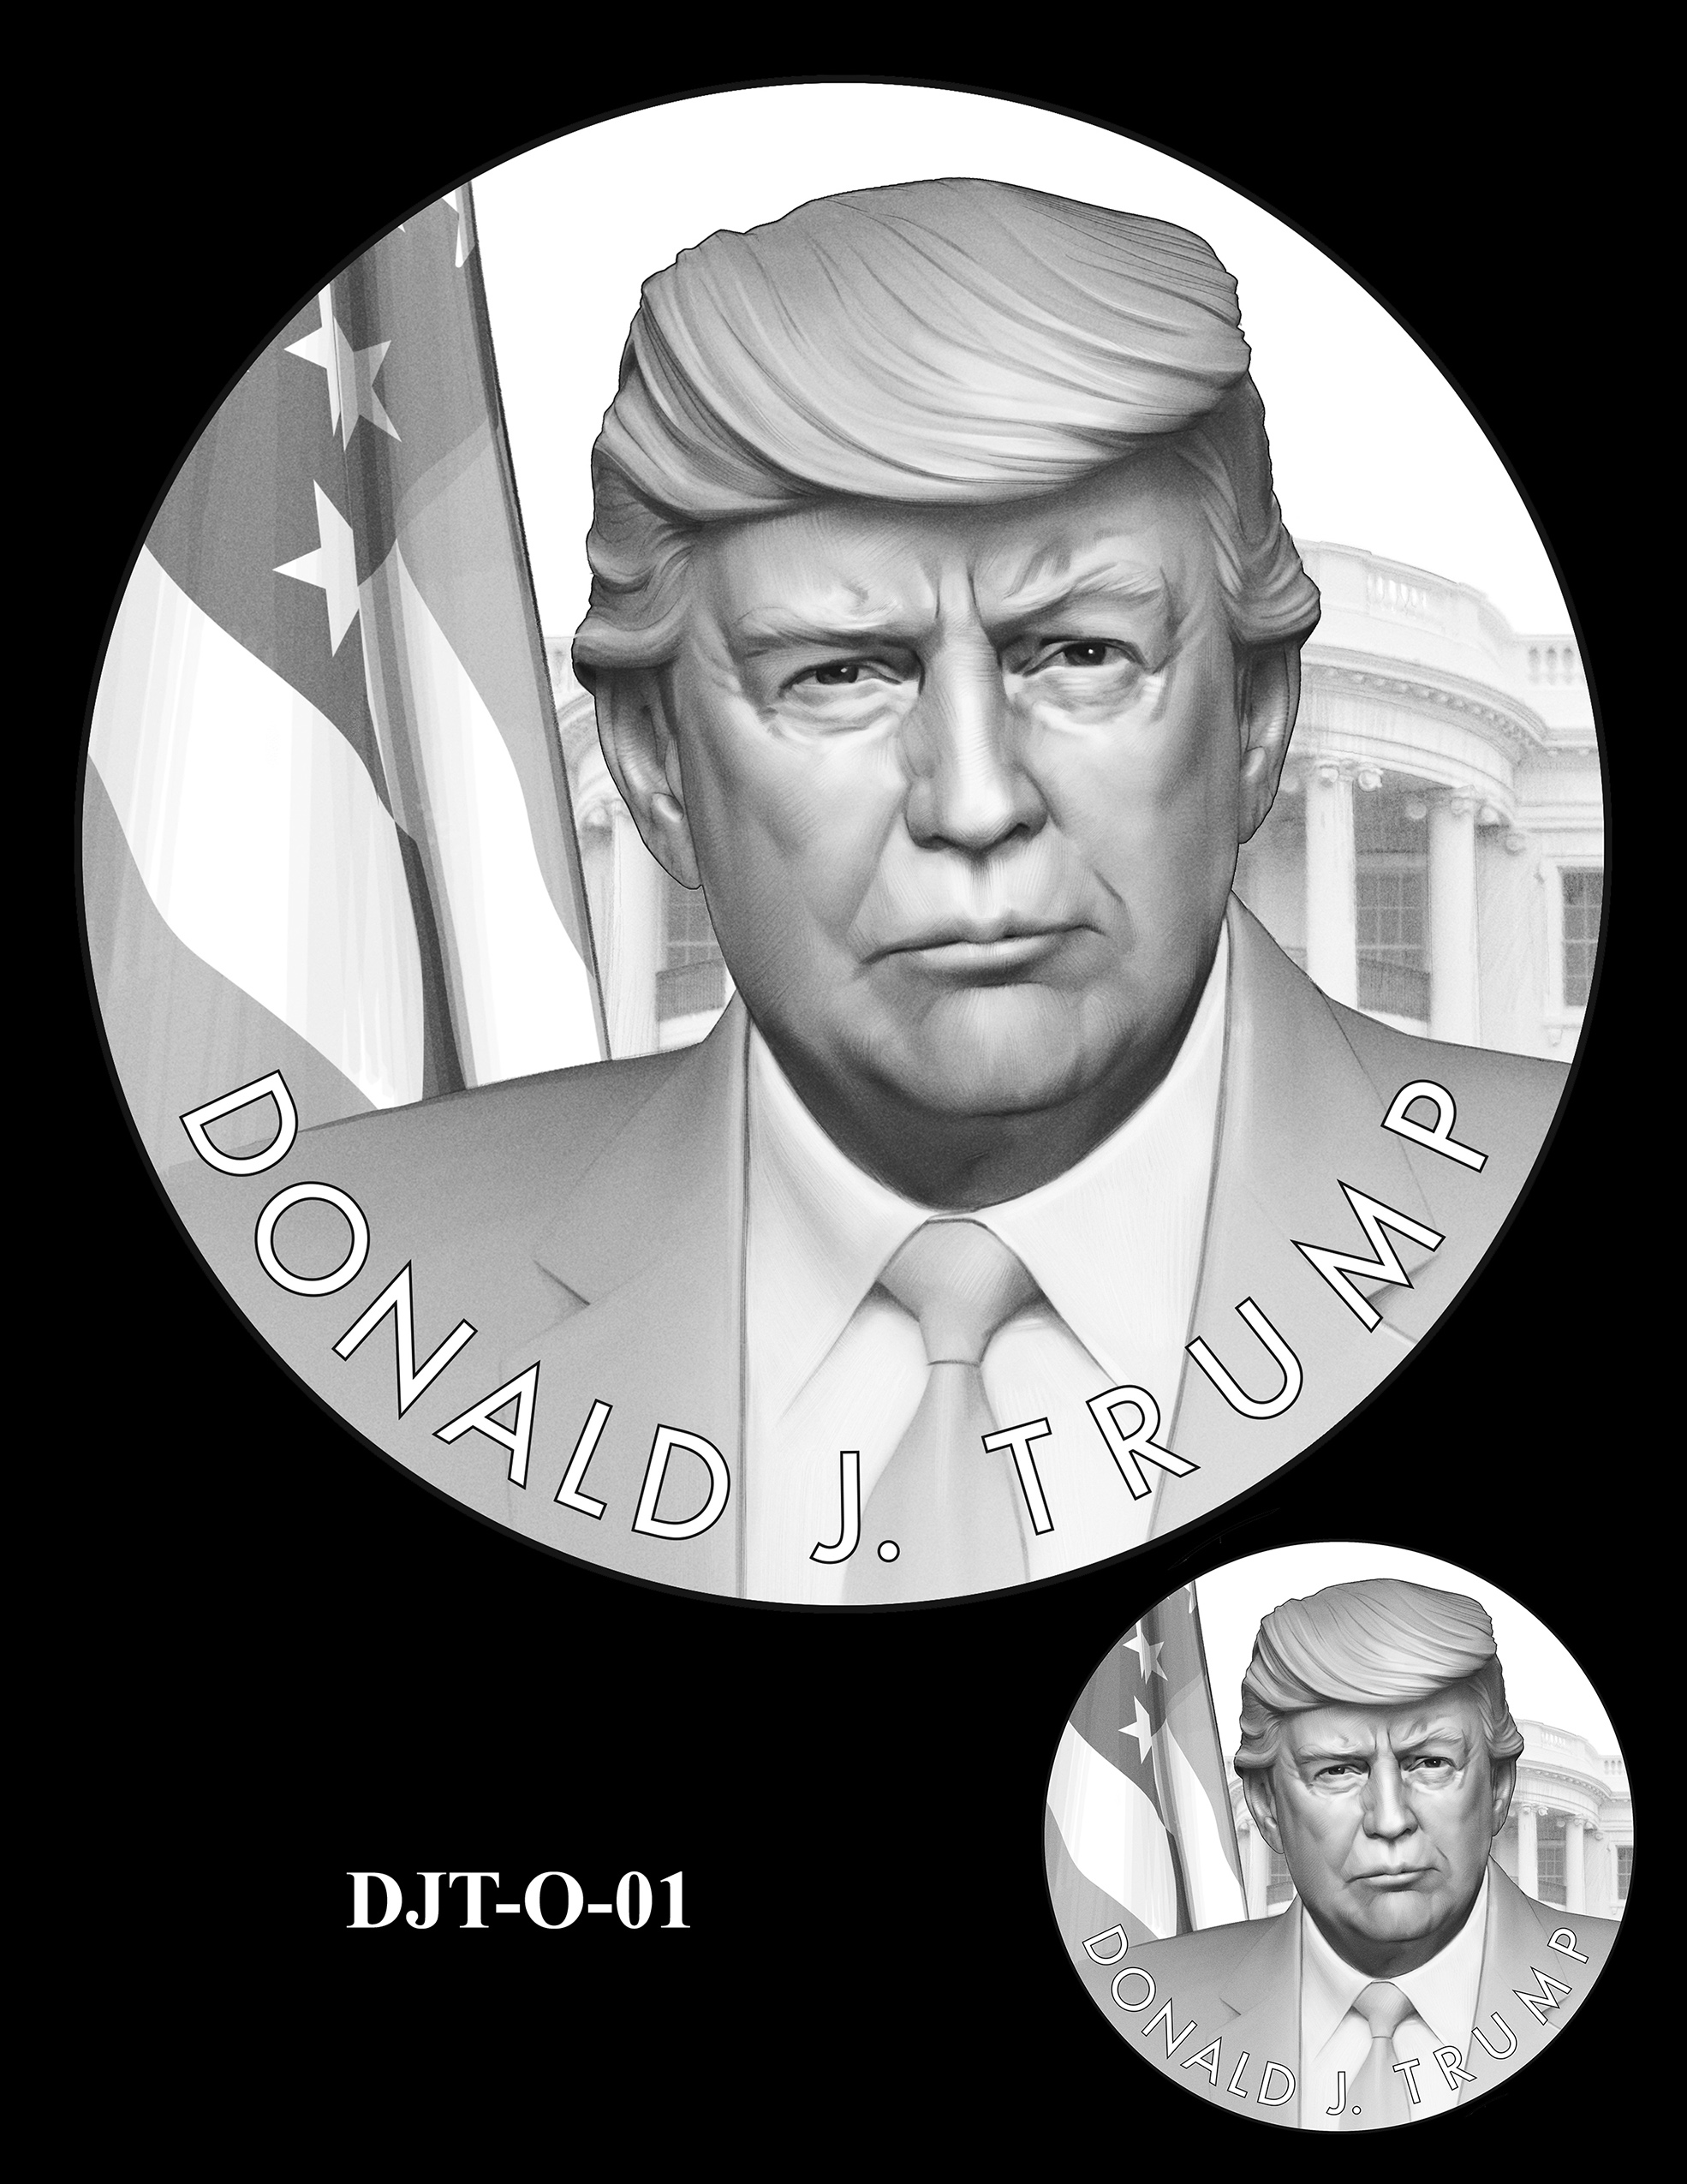 DJT-O-01 -- Donald J. Trump Presidential Medal